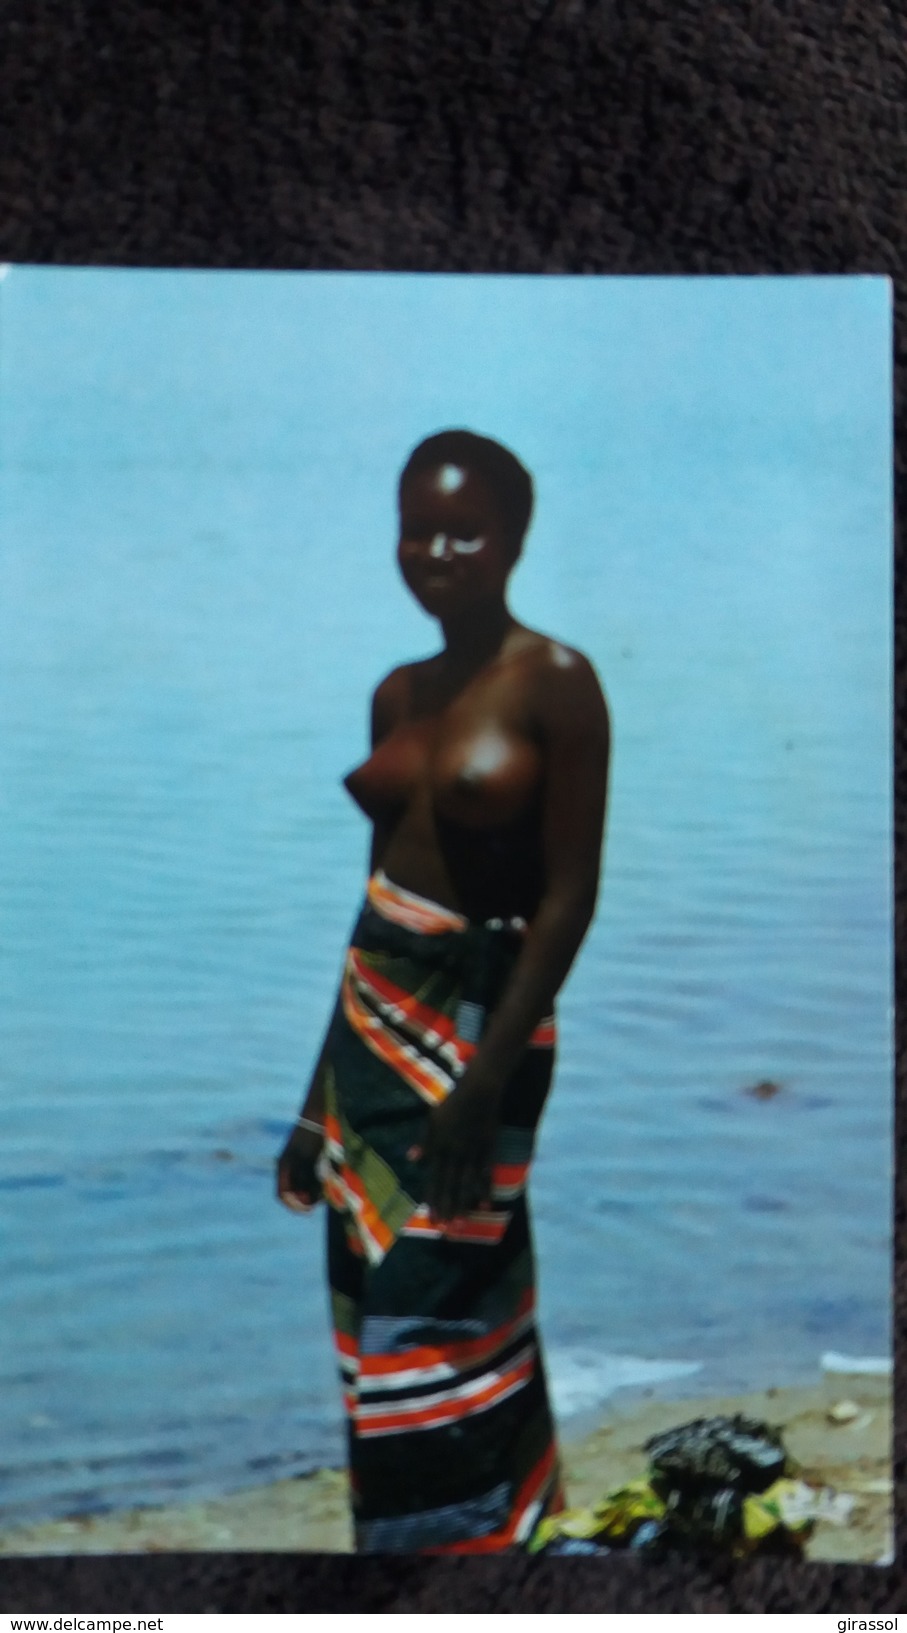 CPSM AFRIQUE EN COUEURS RENCONTRE JEUNE FEMME SEINS NUS AU BORD DU MARIGOT 7359 1984 IRIS - Sin Clasificación